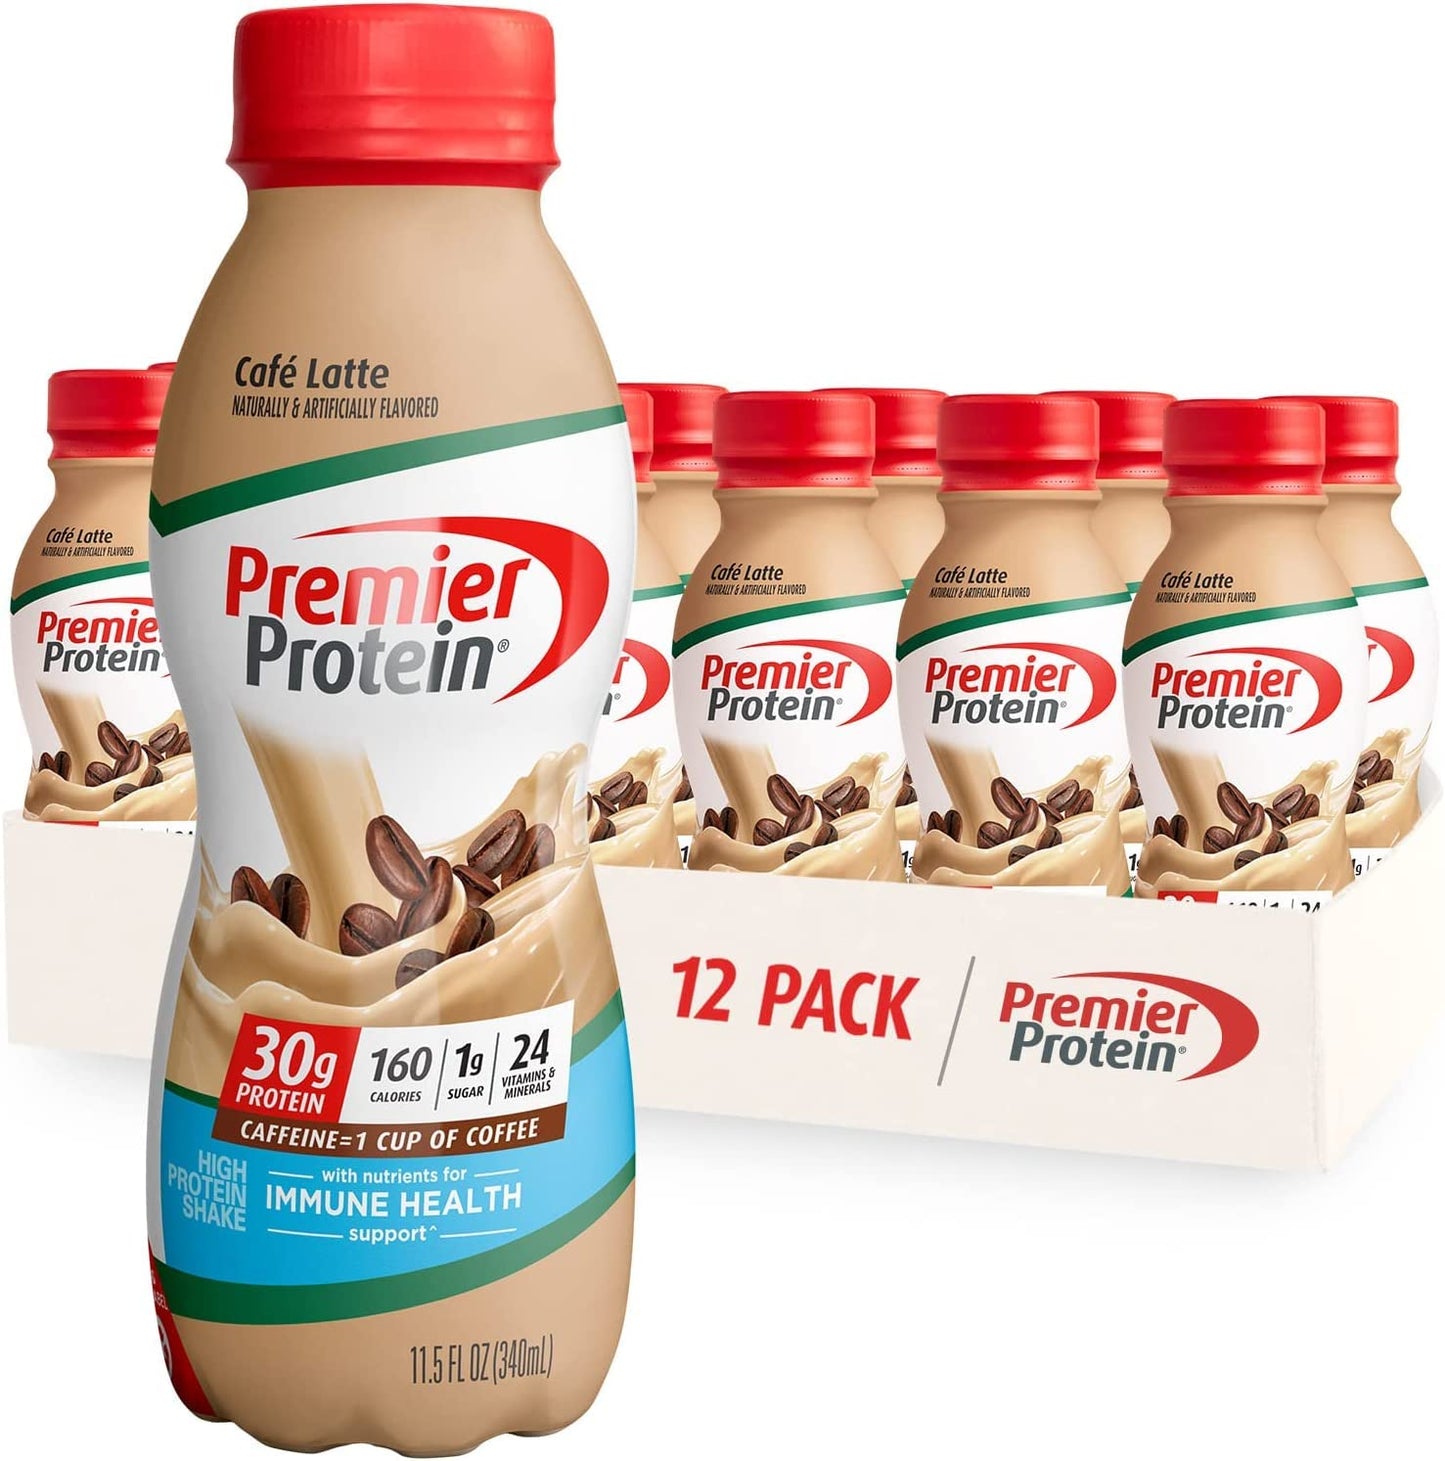 Premier Protein Shake, Café Latte Liquid, 30g Protein, 1g Sugar, 24 Vitamins & Minerals, Nutrients to Support Immune Health, gluten free, 11.5 fl oz Bottle, 12 Pack